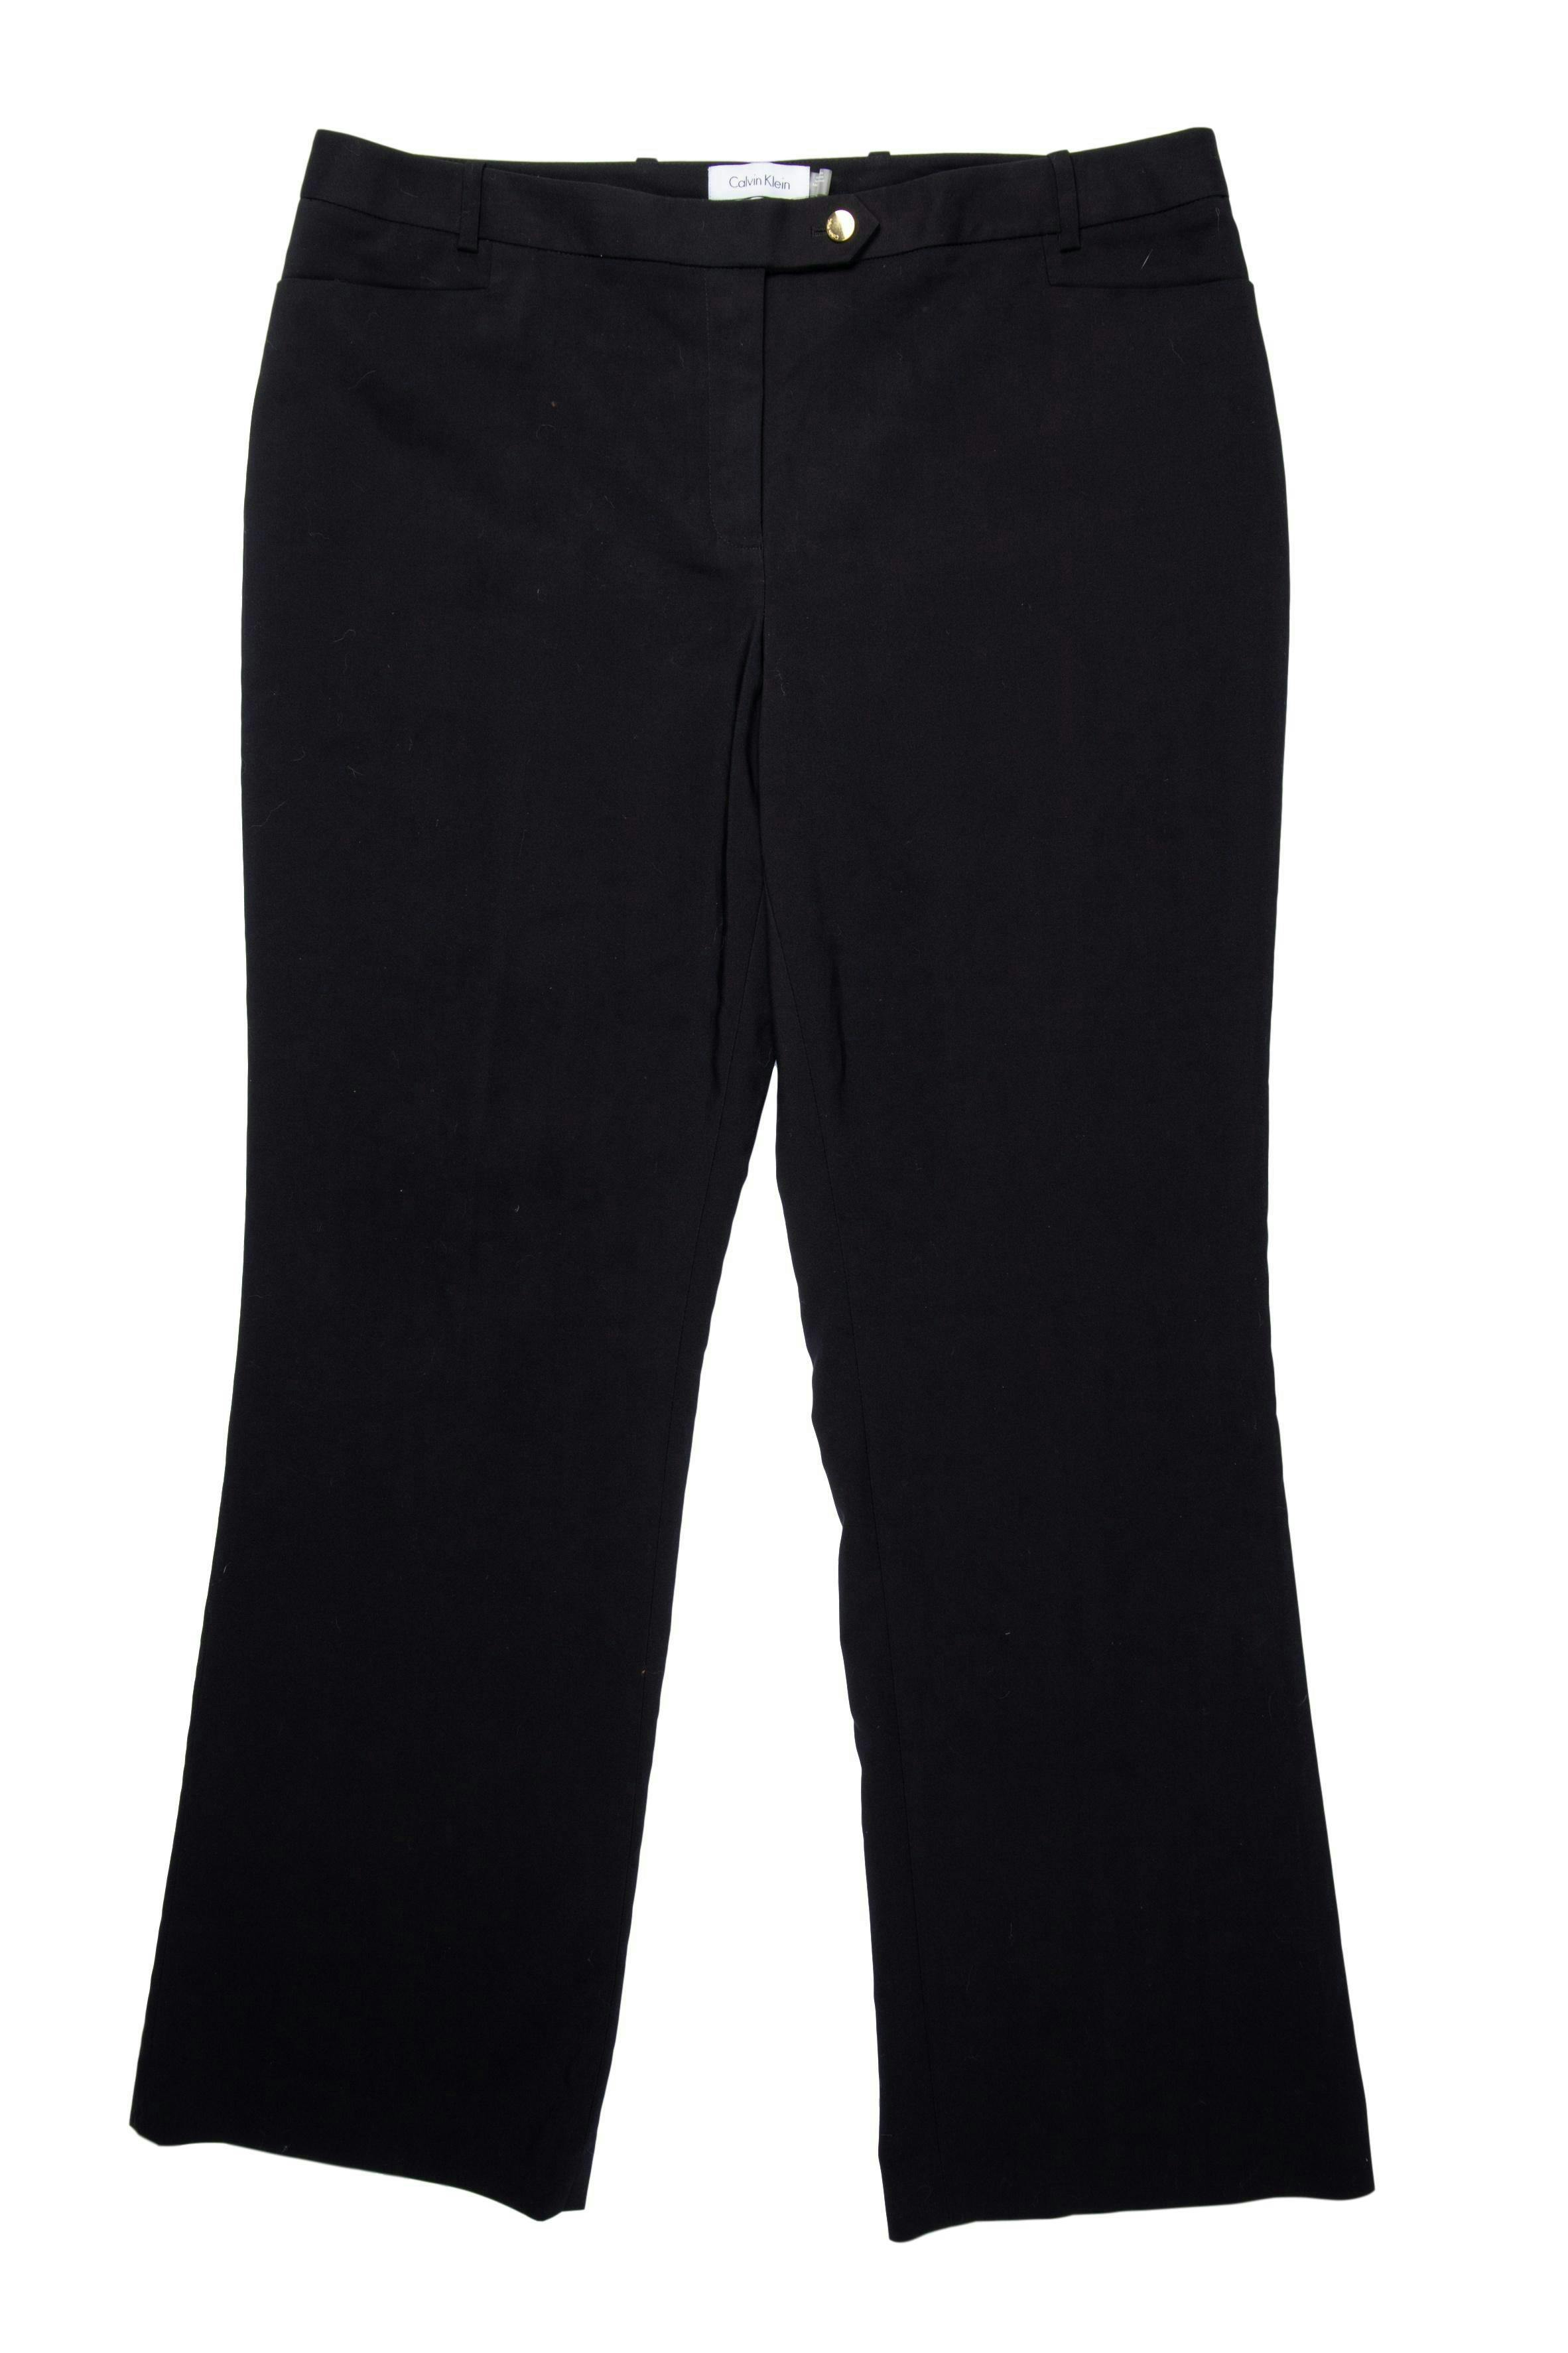 Pantalón Calvin Klein negro, 60% algodón, corte recto, bolsillos laterales y botón dorado. Pretina 96 cm. Nuevo. Precio original S/ 320